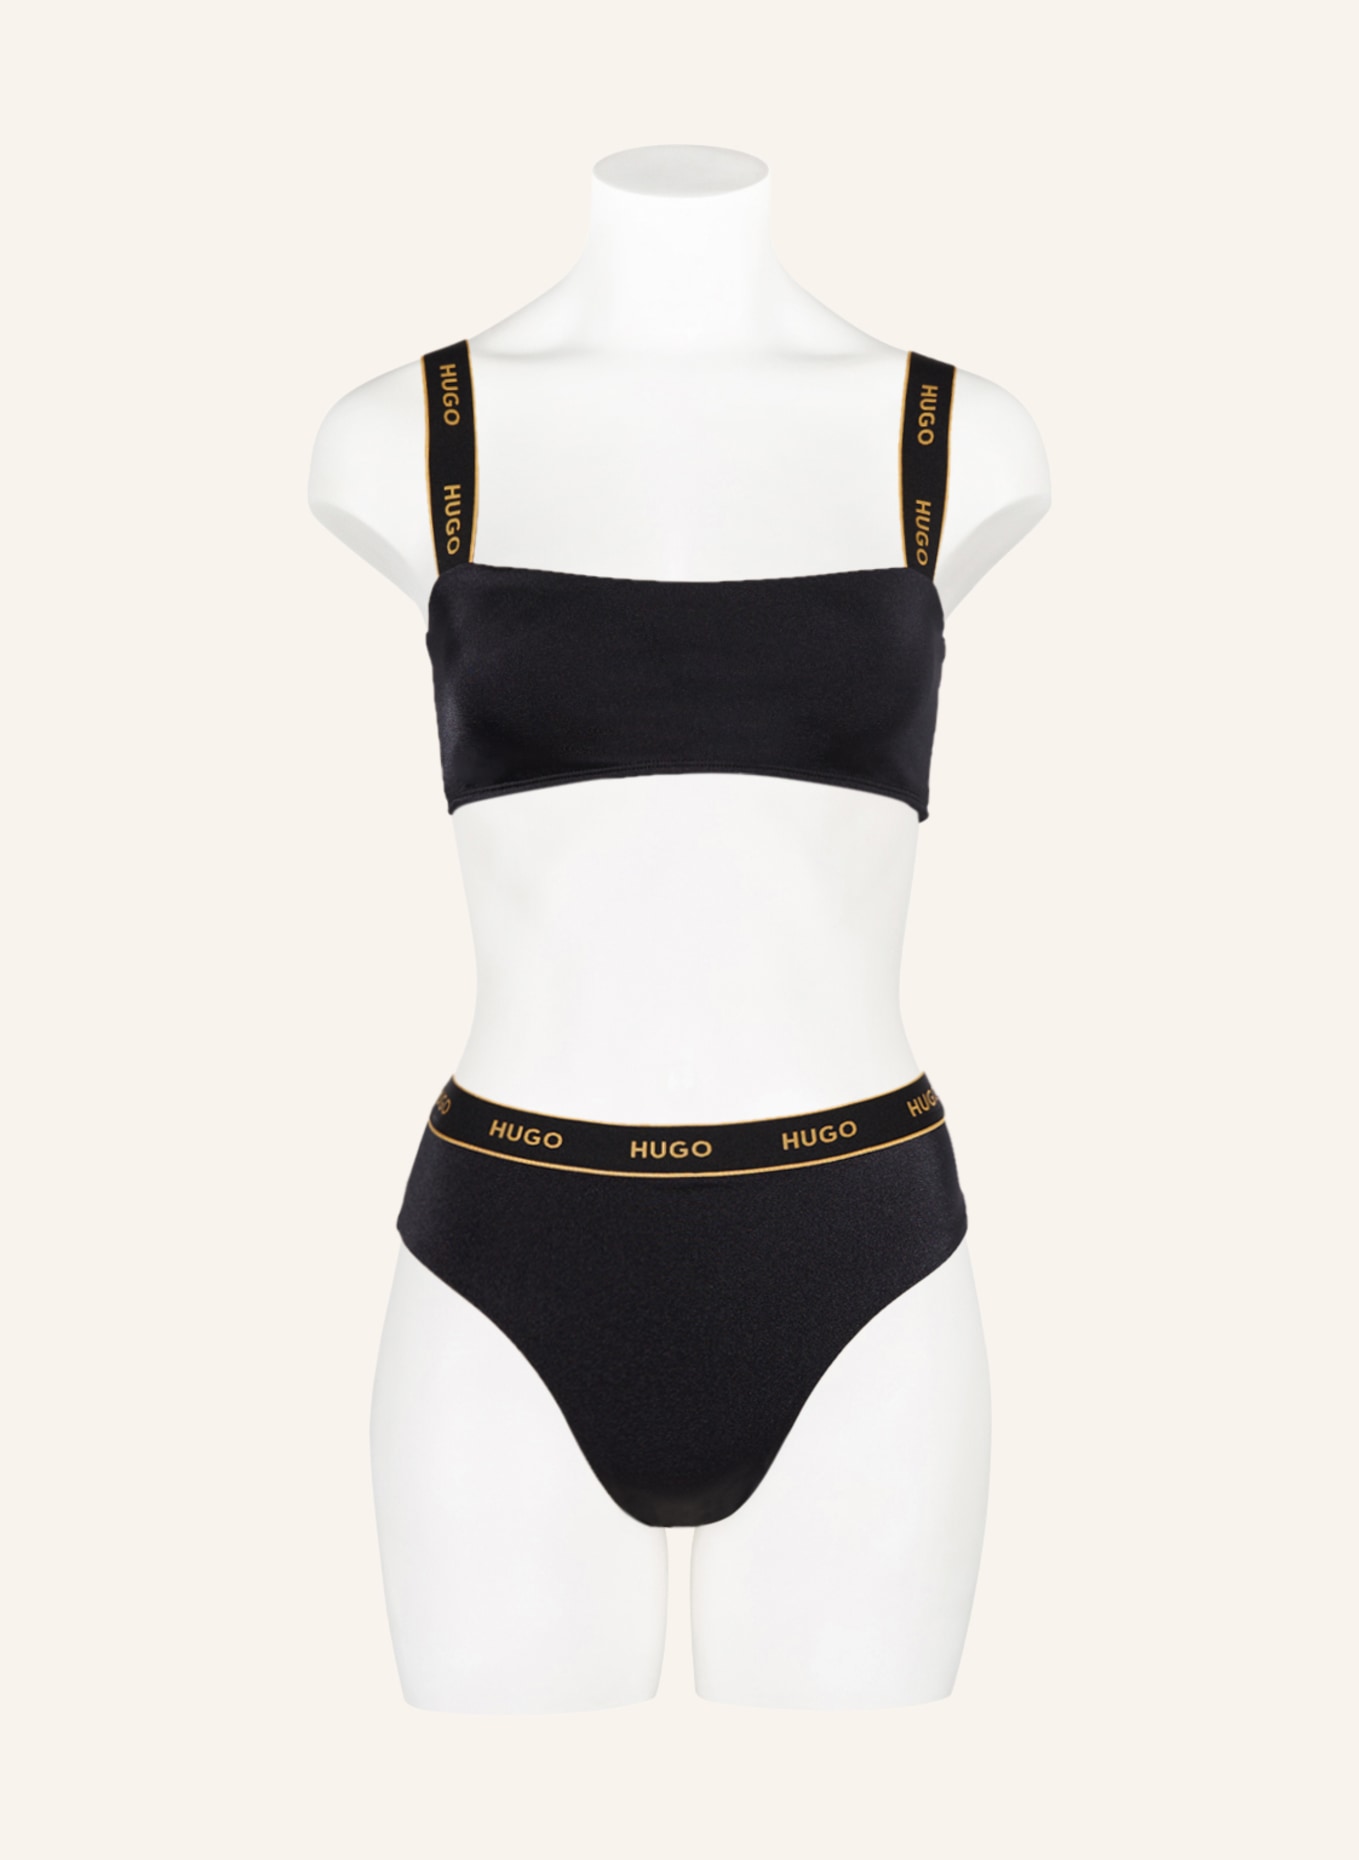 HUGO Bralette bikini top SPARKLING, Color: BLACK (Image 2)